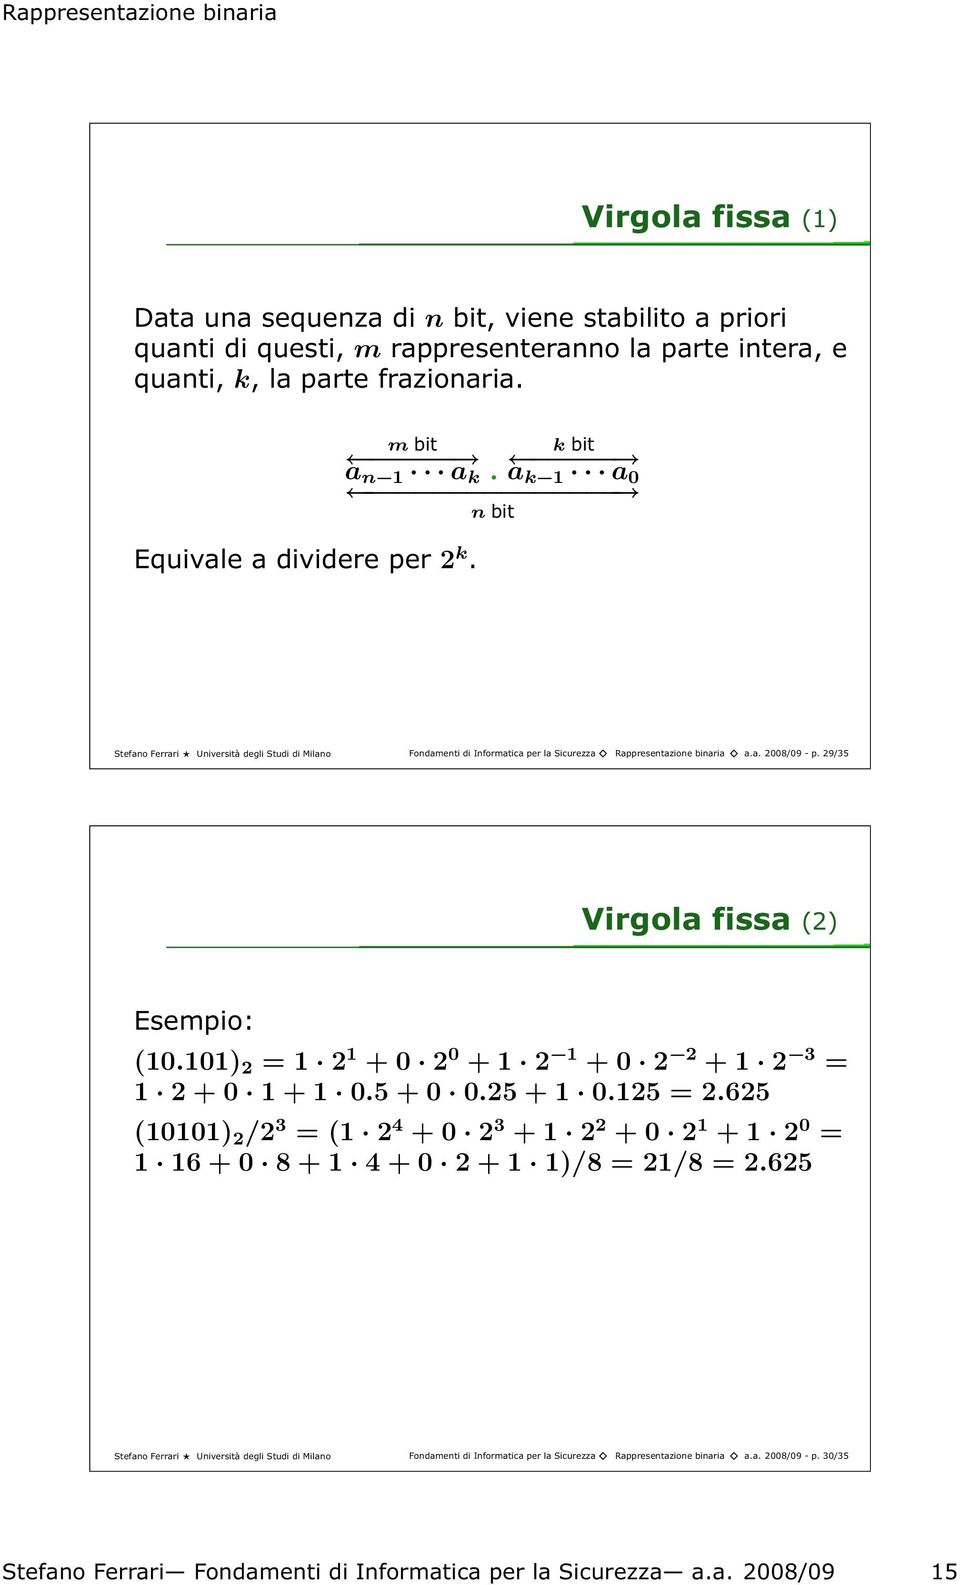 29/35 Virgola fissa(2) Esempio: (10.101) 2 = 1 2 1 + 0 2 0 + 1 2 1 + 0 2 2 + 1 2 3 = 1 2 + 0 1 + 1 0.5 + 0 0.25 + 1 0.125 = 2.